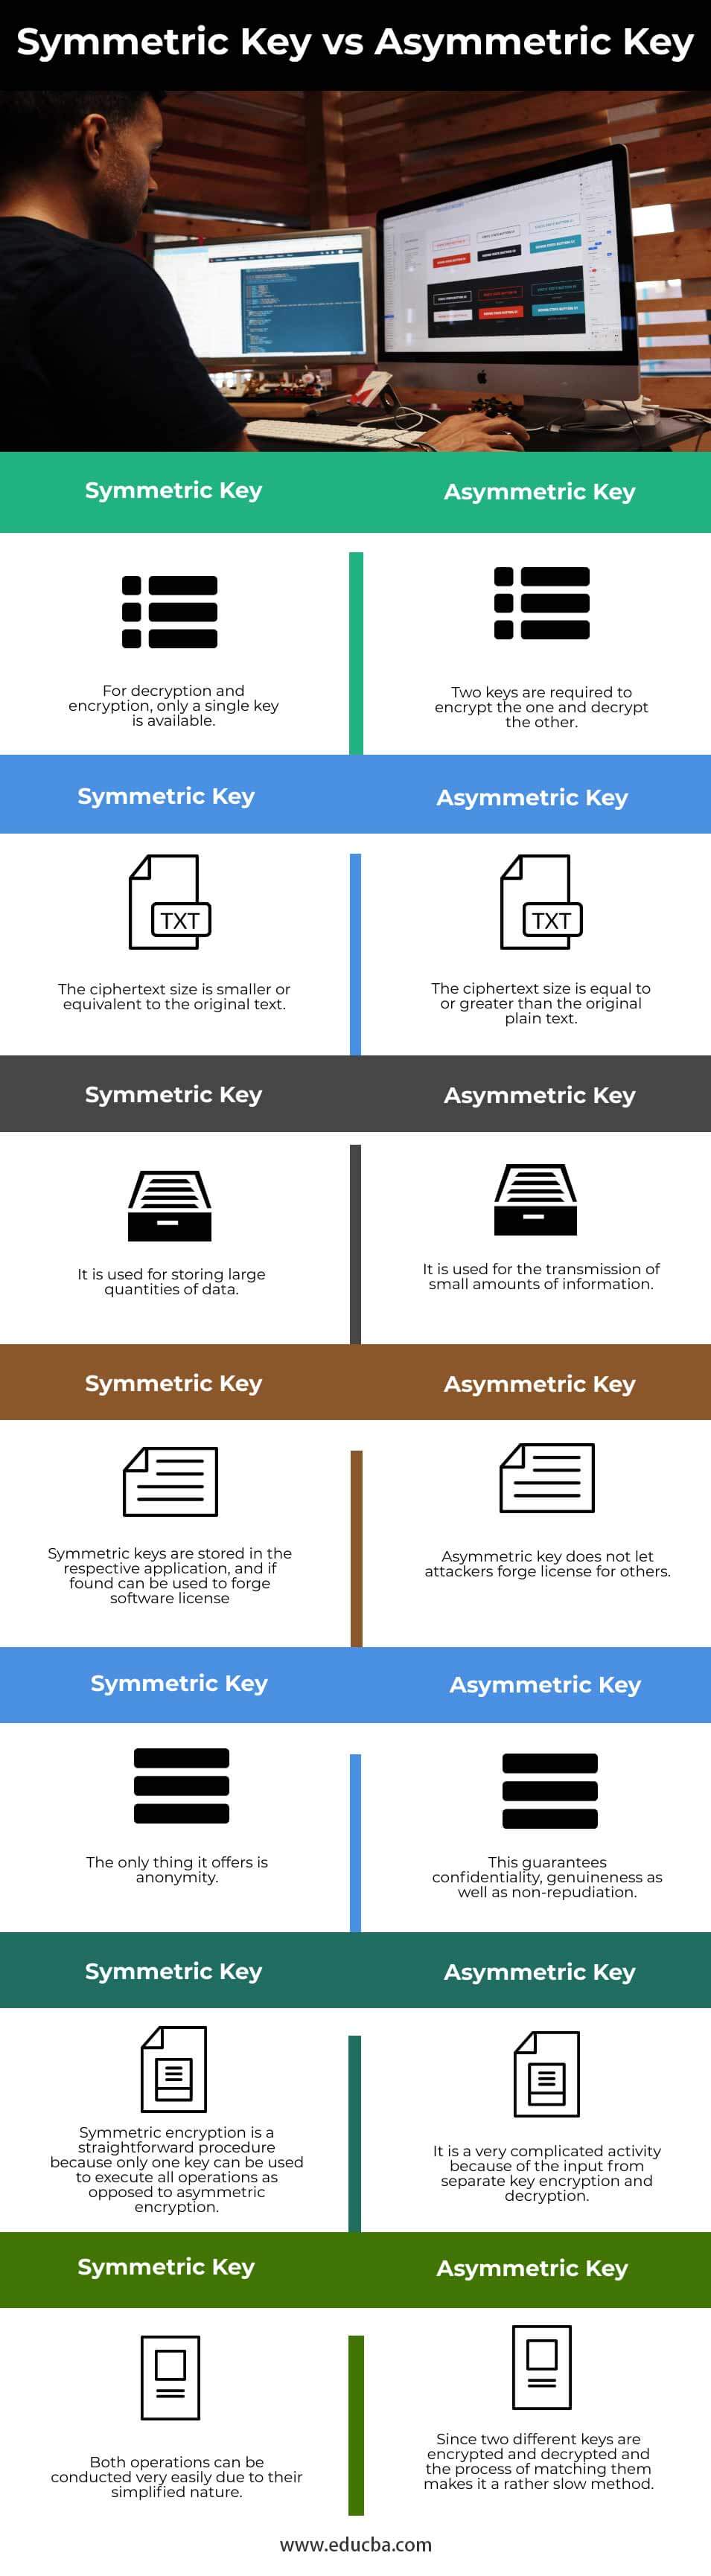 Symmetric-Key-vs-Asymmetric-Key-info